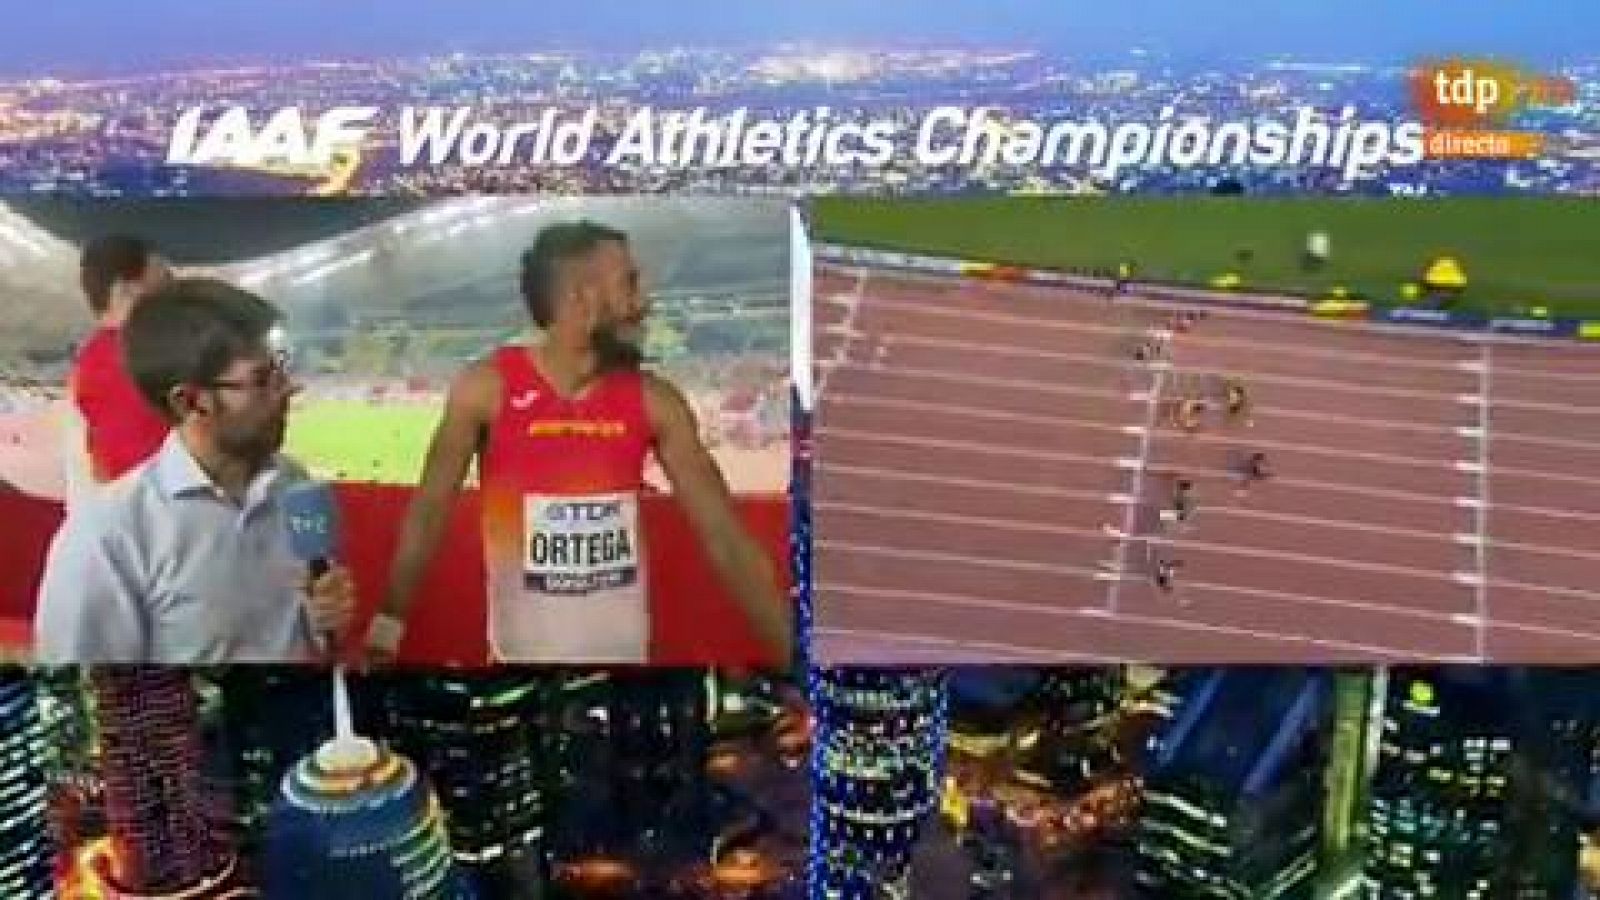 Mundial de atletismo | Orlando Ortega dice que le han "robado la medalla" - rtve.es